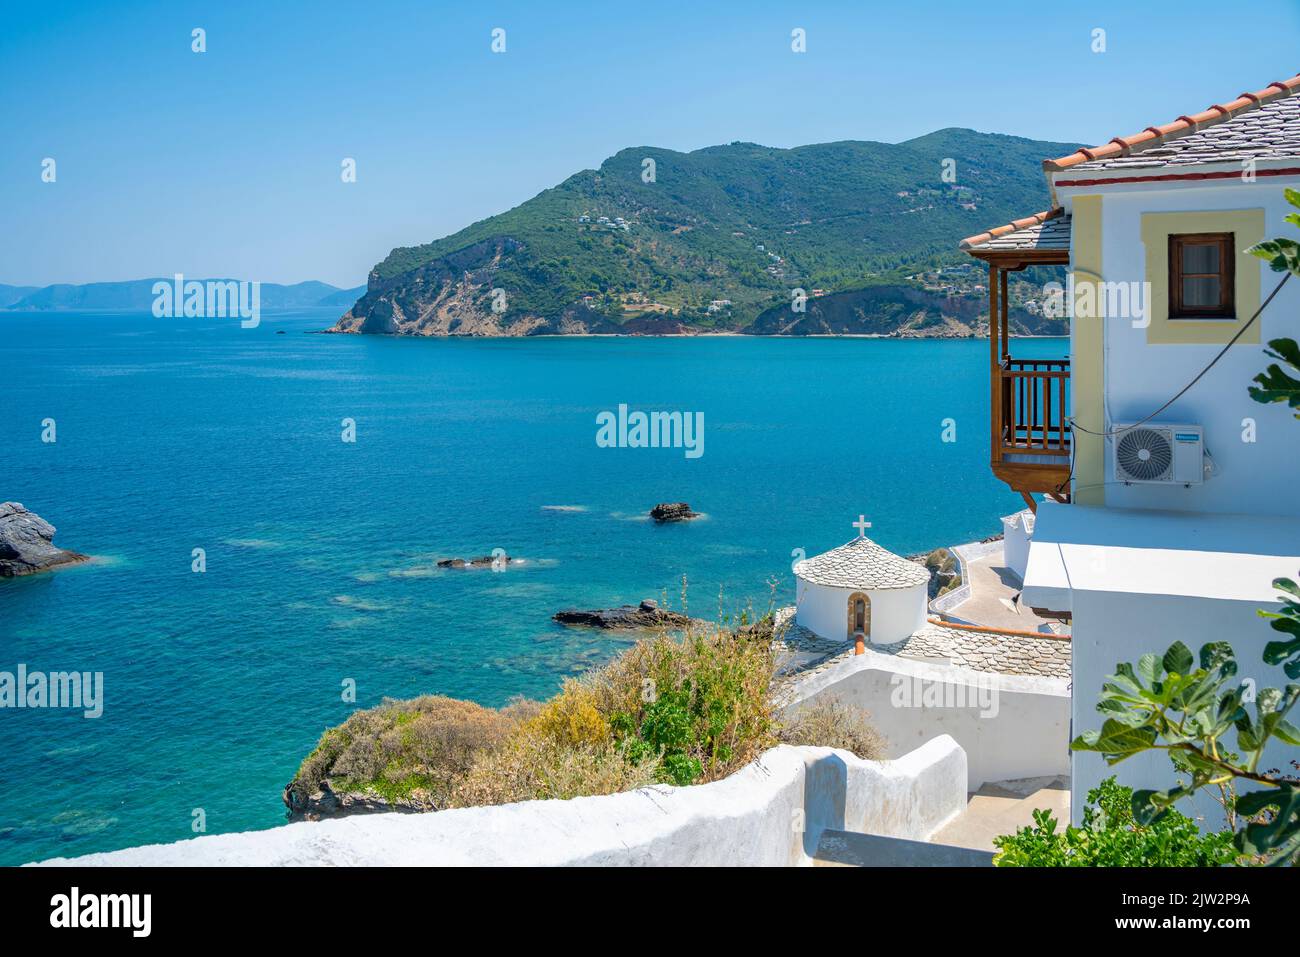 Vue sur les maisons blanchies à la chaux surplombant la mer, la ville de Skopelos, l'île de Skopelos, les îles Sporades, les îles grecques, Grèce, Europe Banque D'Images